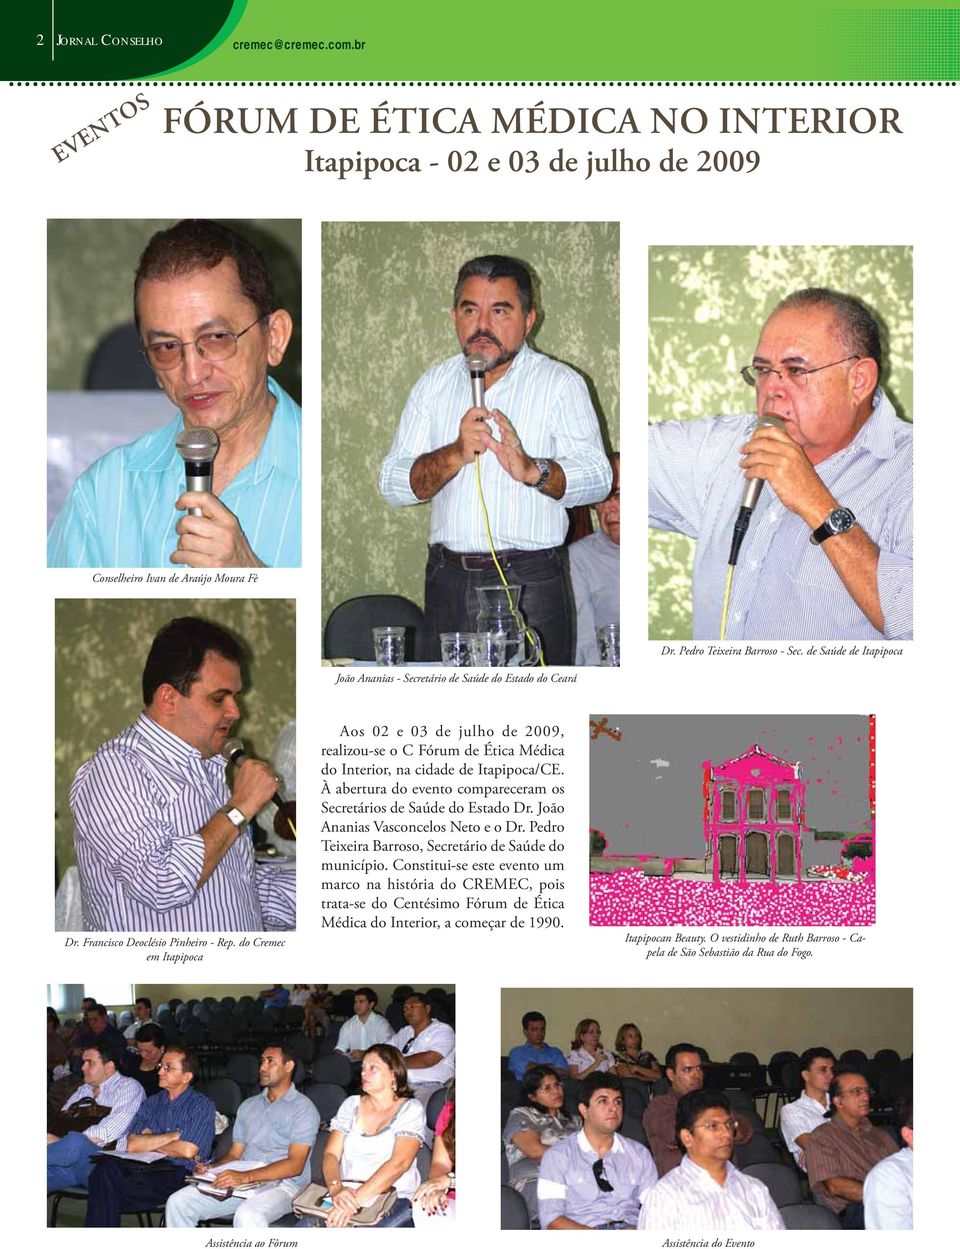 do Cremec em Itapipoca Aos 02 e 03 de julho de 2009, realizou-se o C Fórum de Ética Médica do Interior, na cidade de Itapipoca/CE.